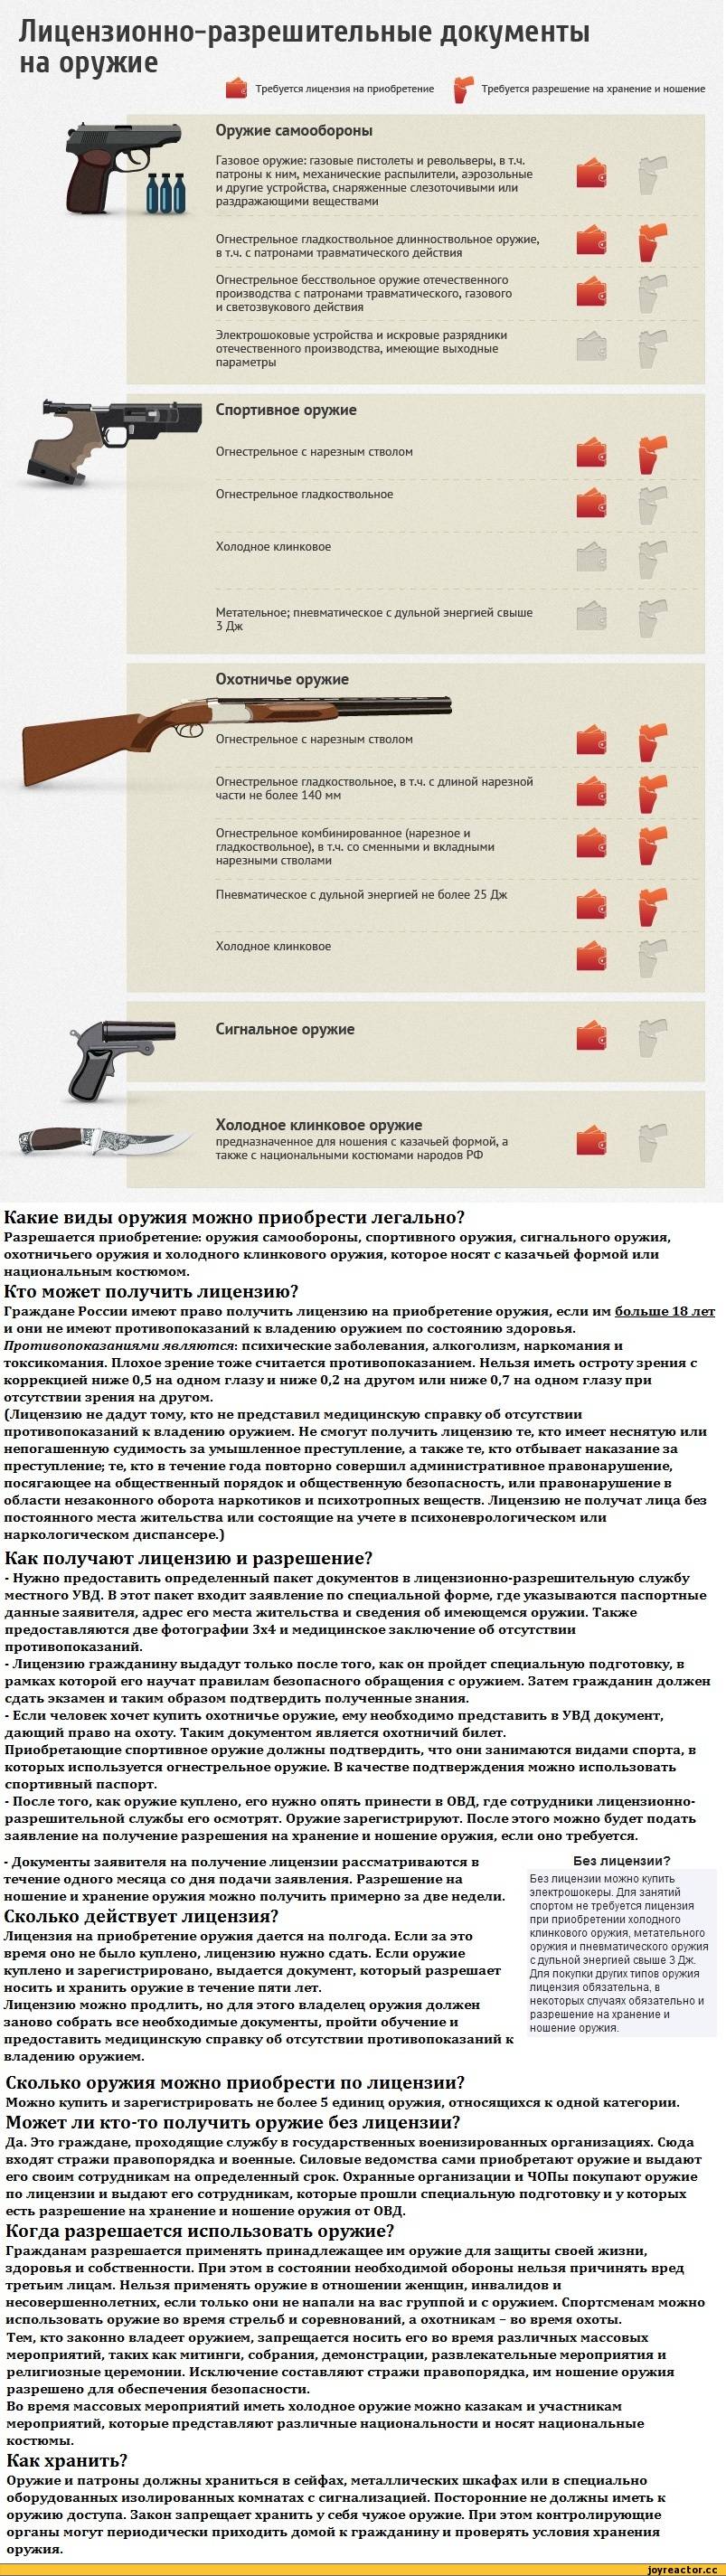 Разрешение на холодное оружие — как получить в 2020 году в россии? какие документы нужны для разрешения на ношение холодного оружия?